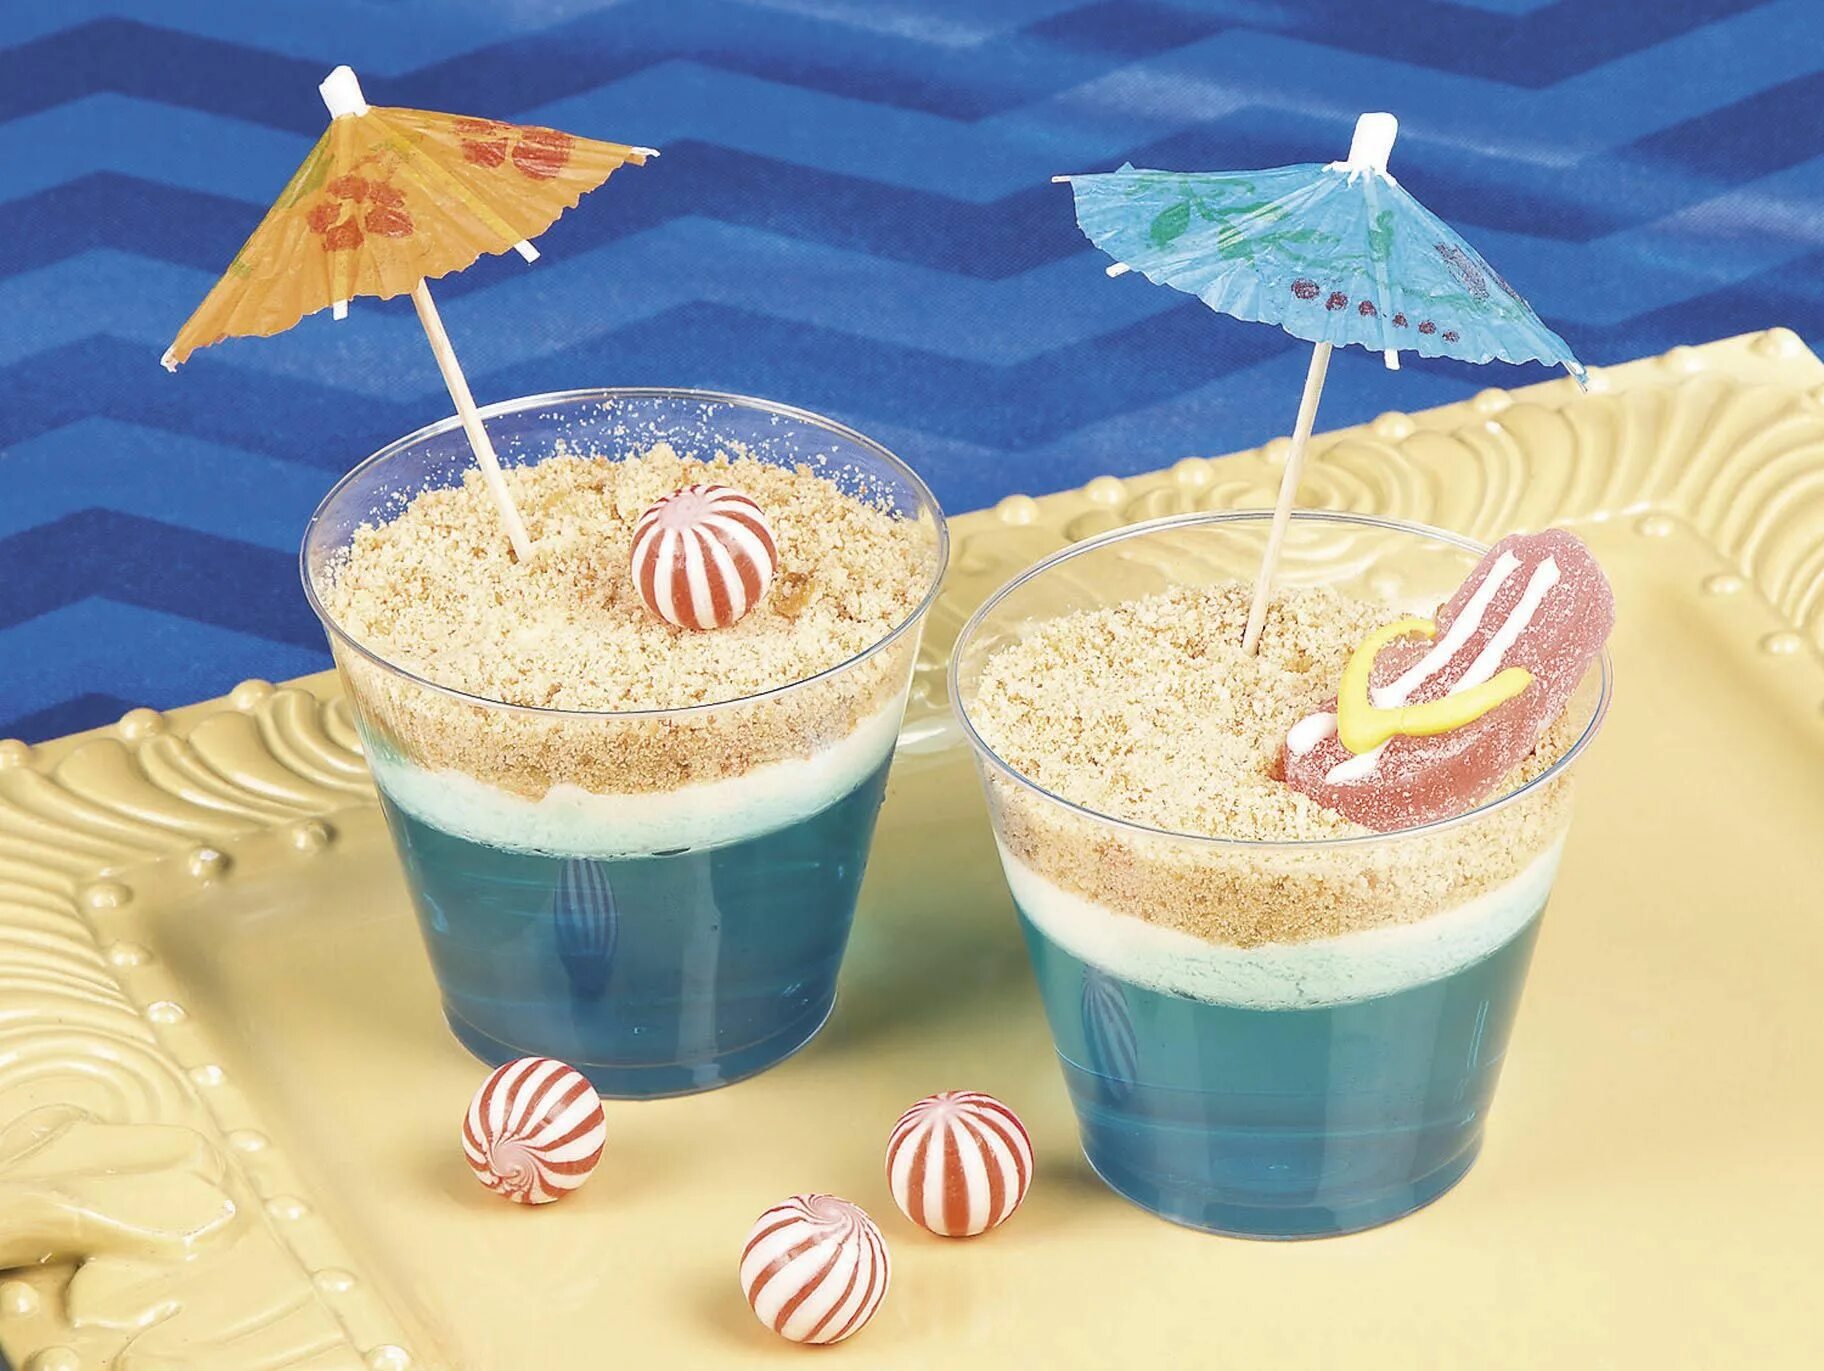 Сладости с моря. Десерт на морскую тему. День рождения в пляжном стиле. Десерт в морском стиле. Десерты в гавайском стиле.